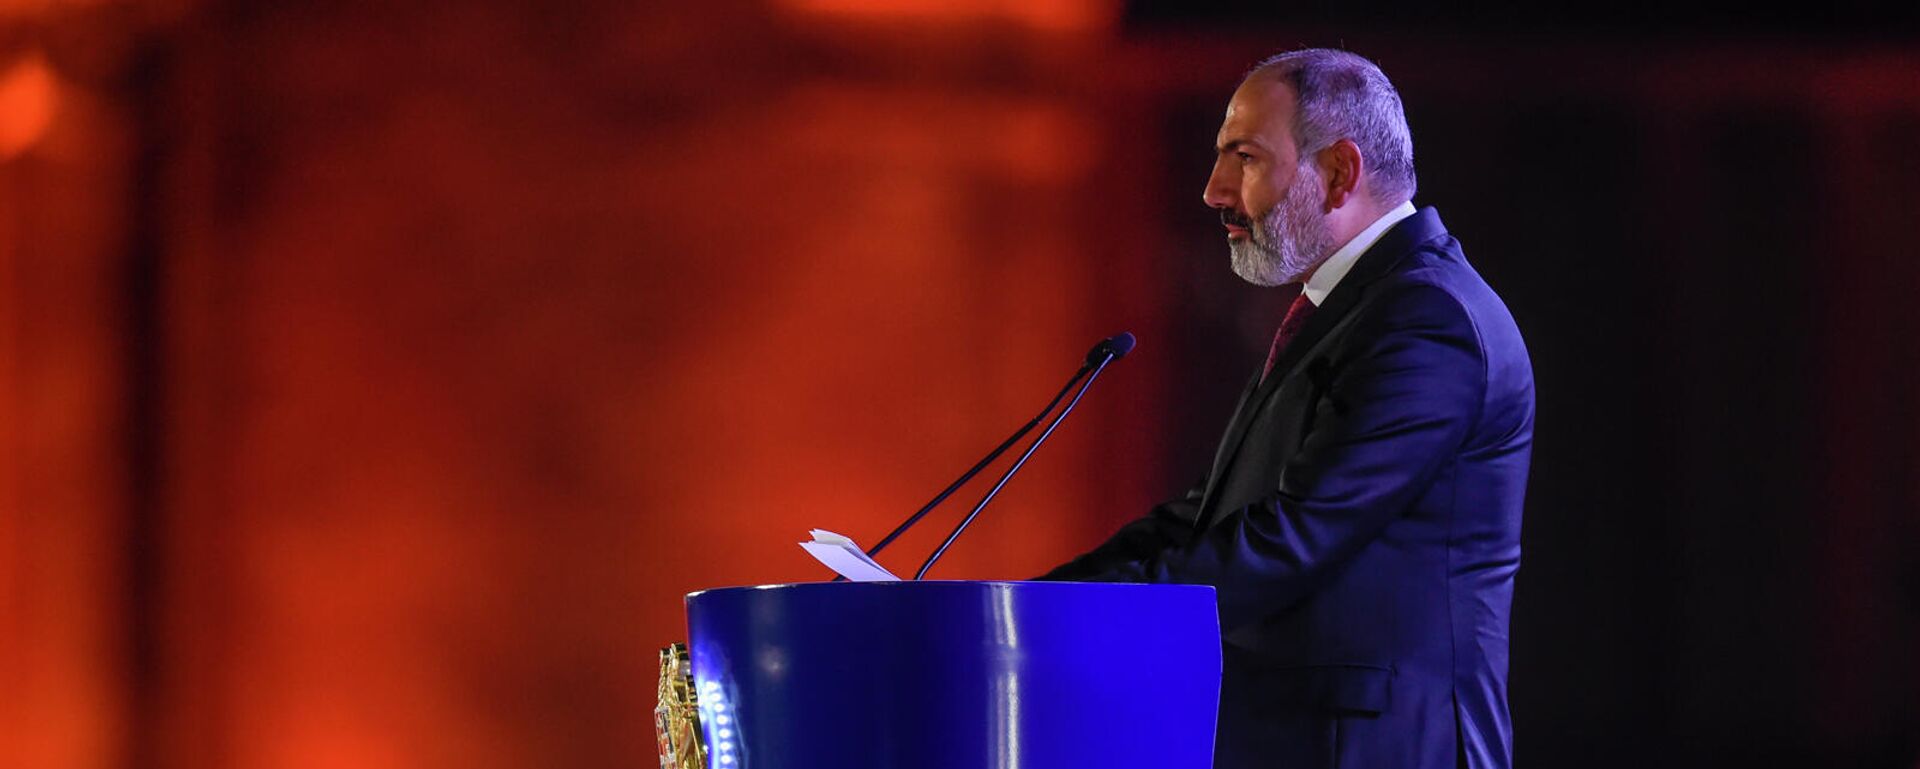 Премьер-министр Никол Пашинян во время приветственной речи перед праздничным концертом (21 сентября 2021). Ереван - Sputnik Армения, 1920, 21.09.2021